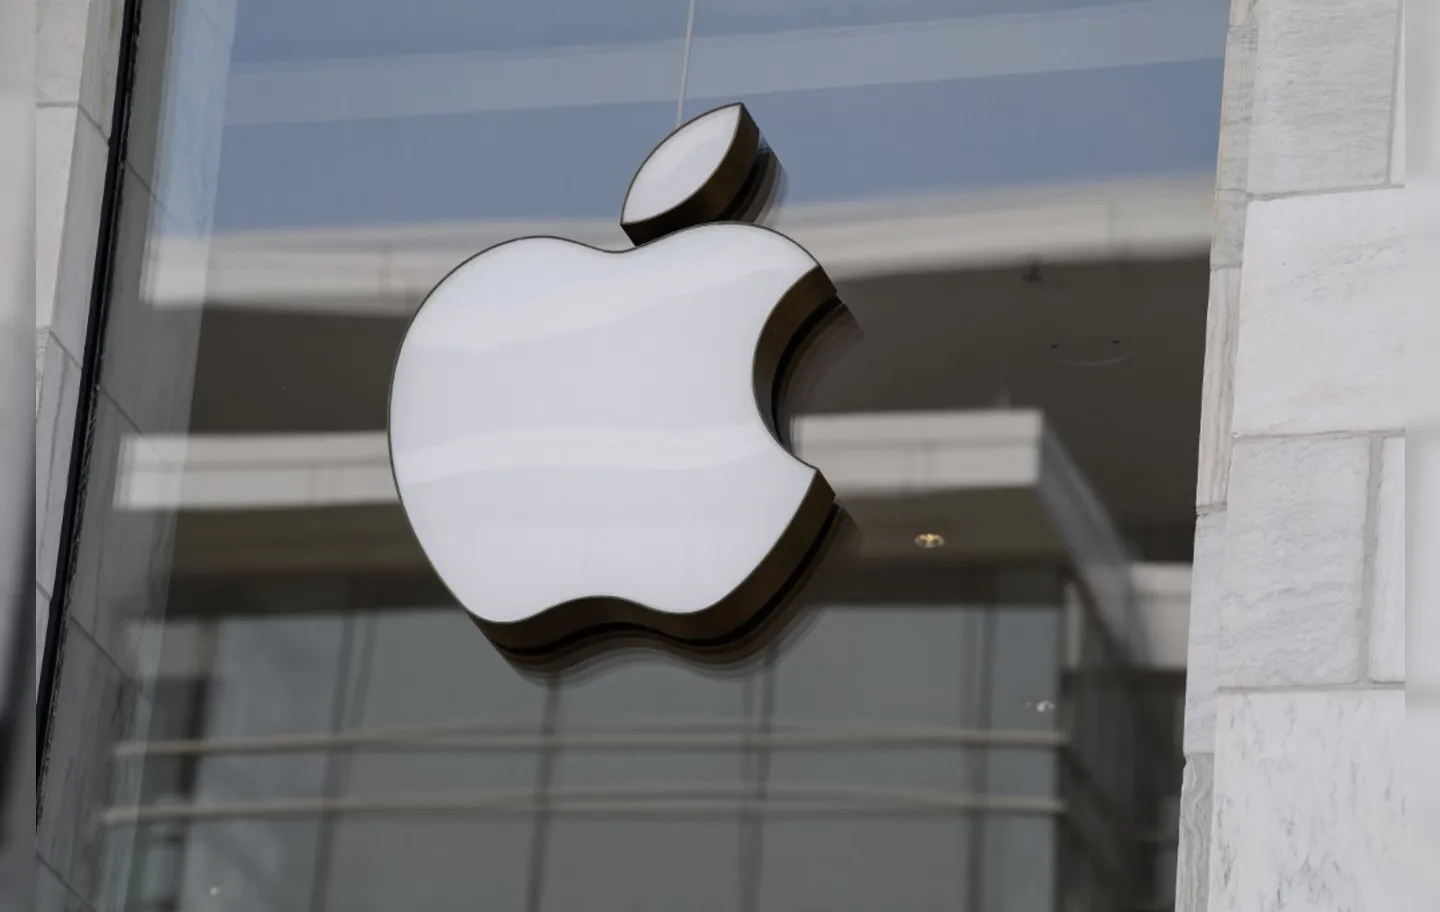 Por muito tempo, a fabricante do iPhone e de computadores Mac limitou os reparos de seus aparelhos aos técnicos | Foto: AFP